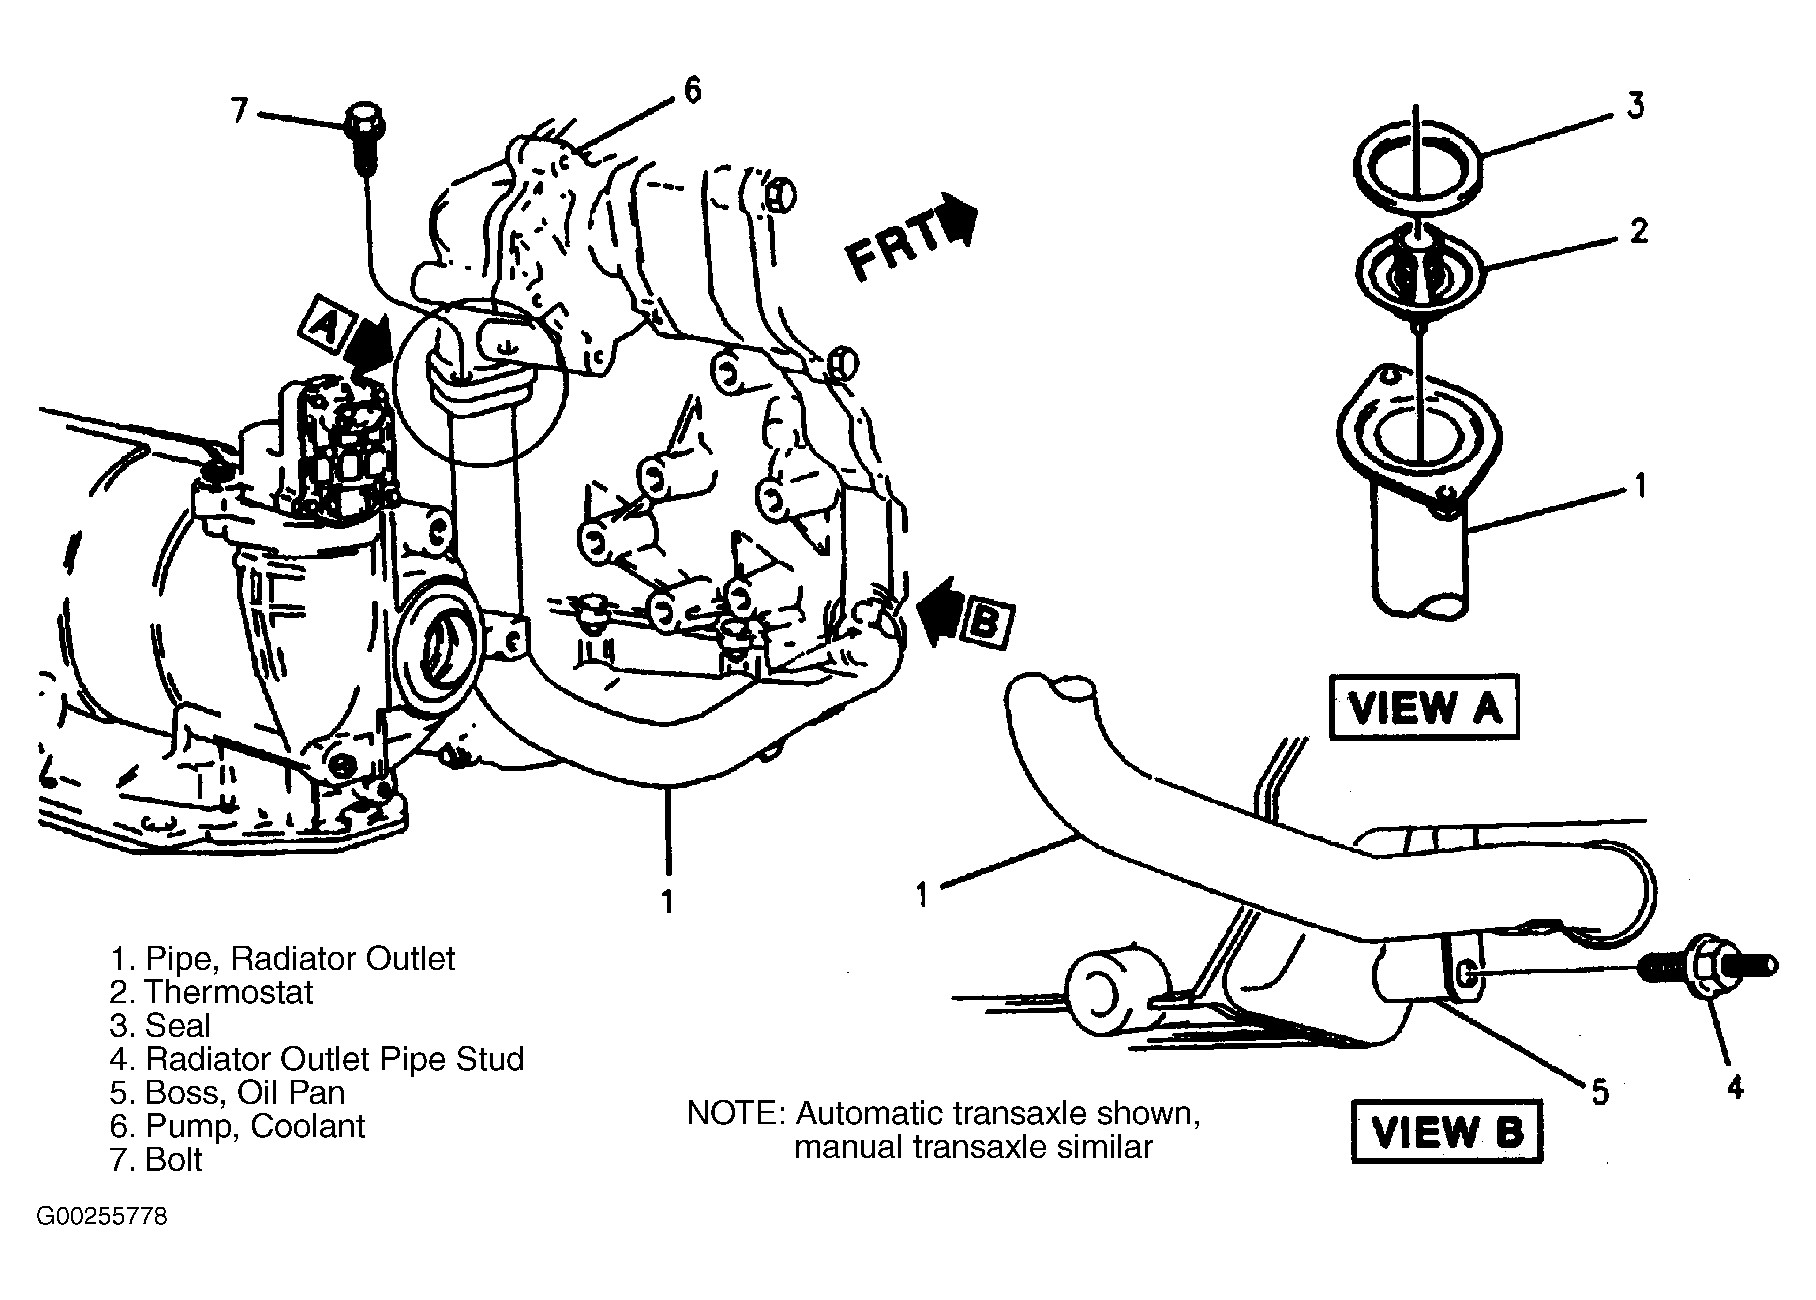 2003 Pontiac Grand Prix Engine Diagram Pontiac Engine Diagrams Wiring Diagram Datasource Of 2003 Pontiac Grand Prix Engine Diagram